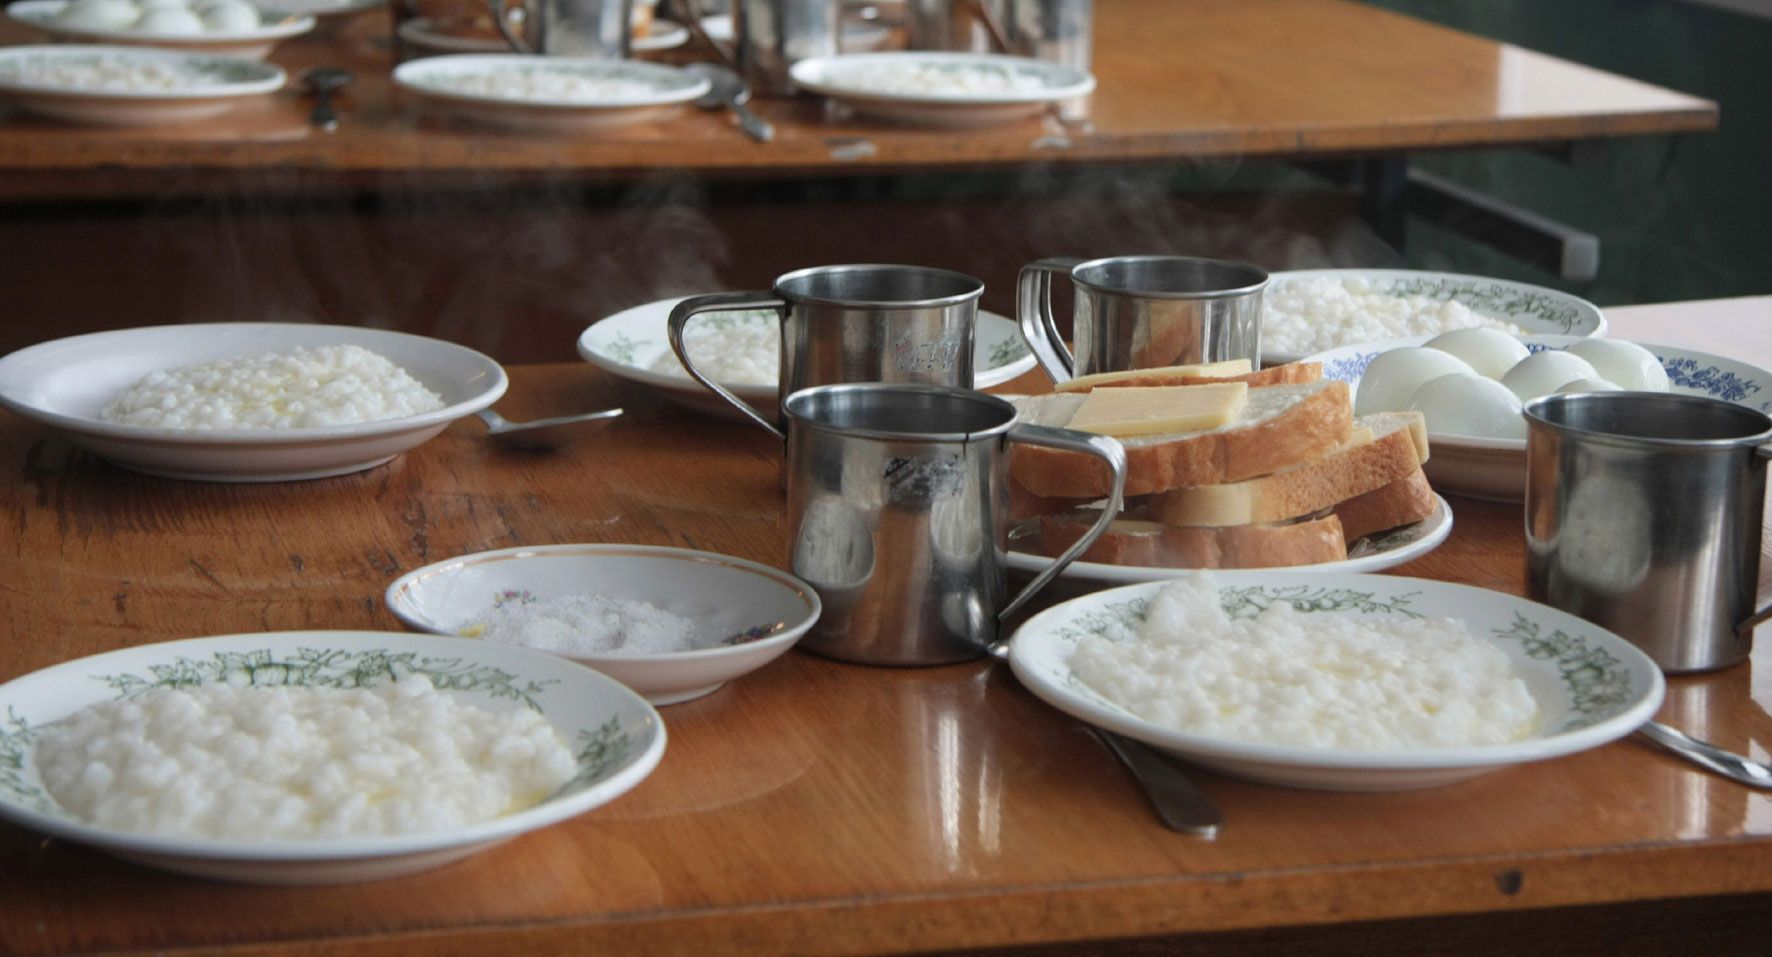 Os russos gostam de comer arroz, mas nem sempre na forma como se costuma consumi-lo no Brasil.